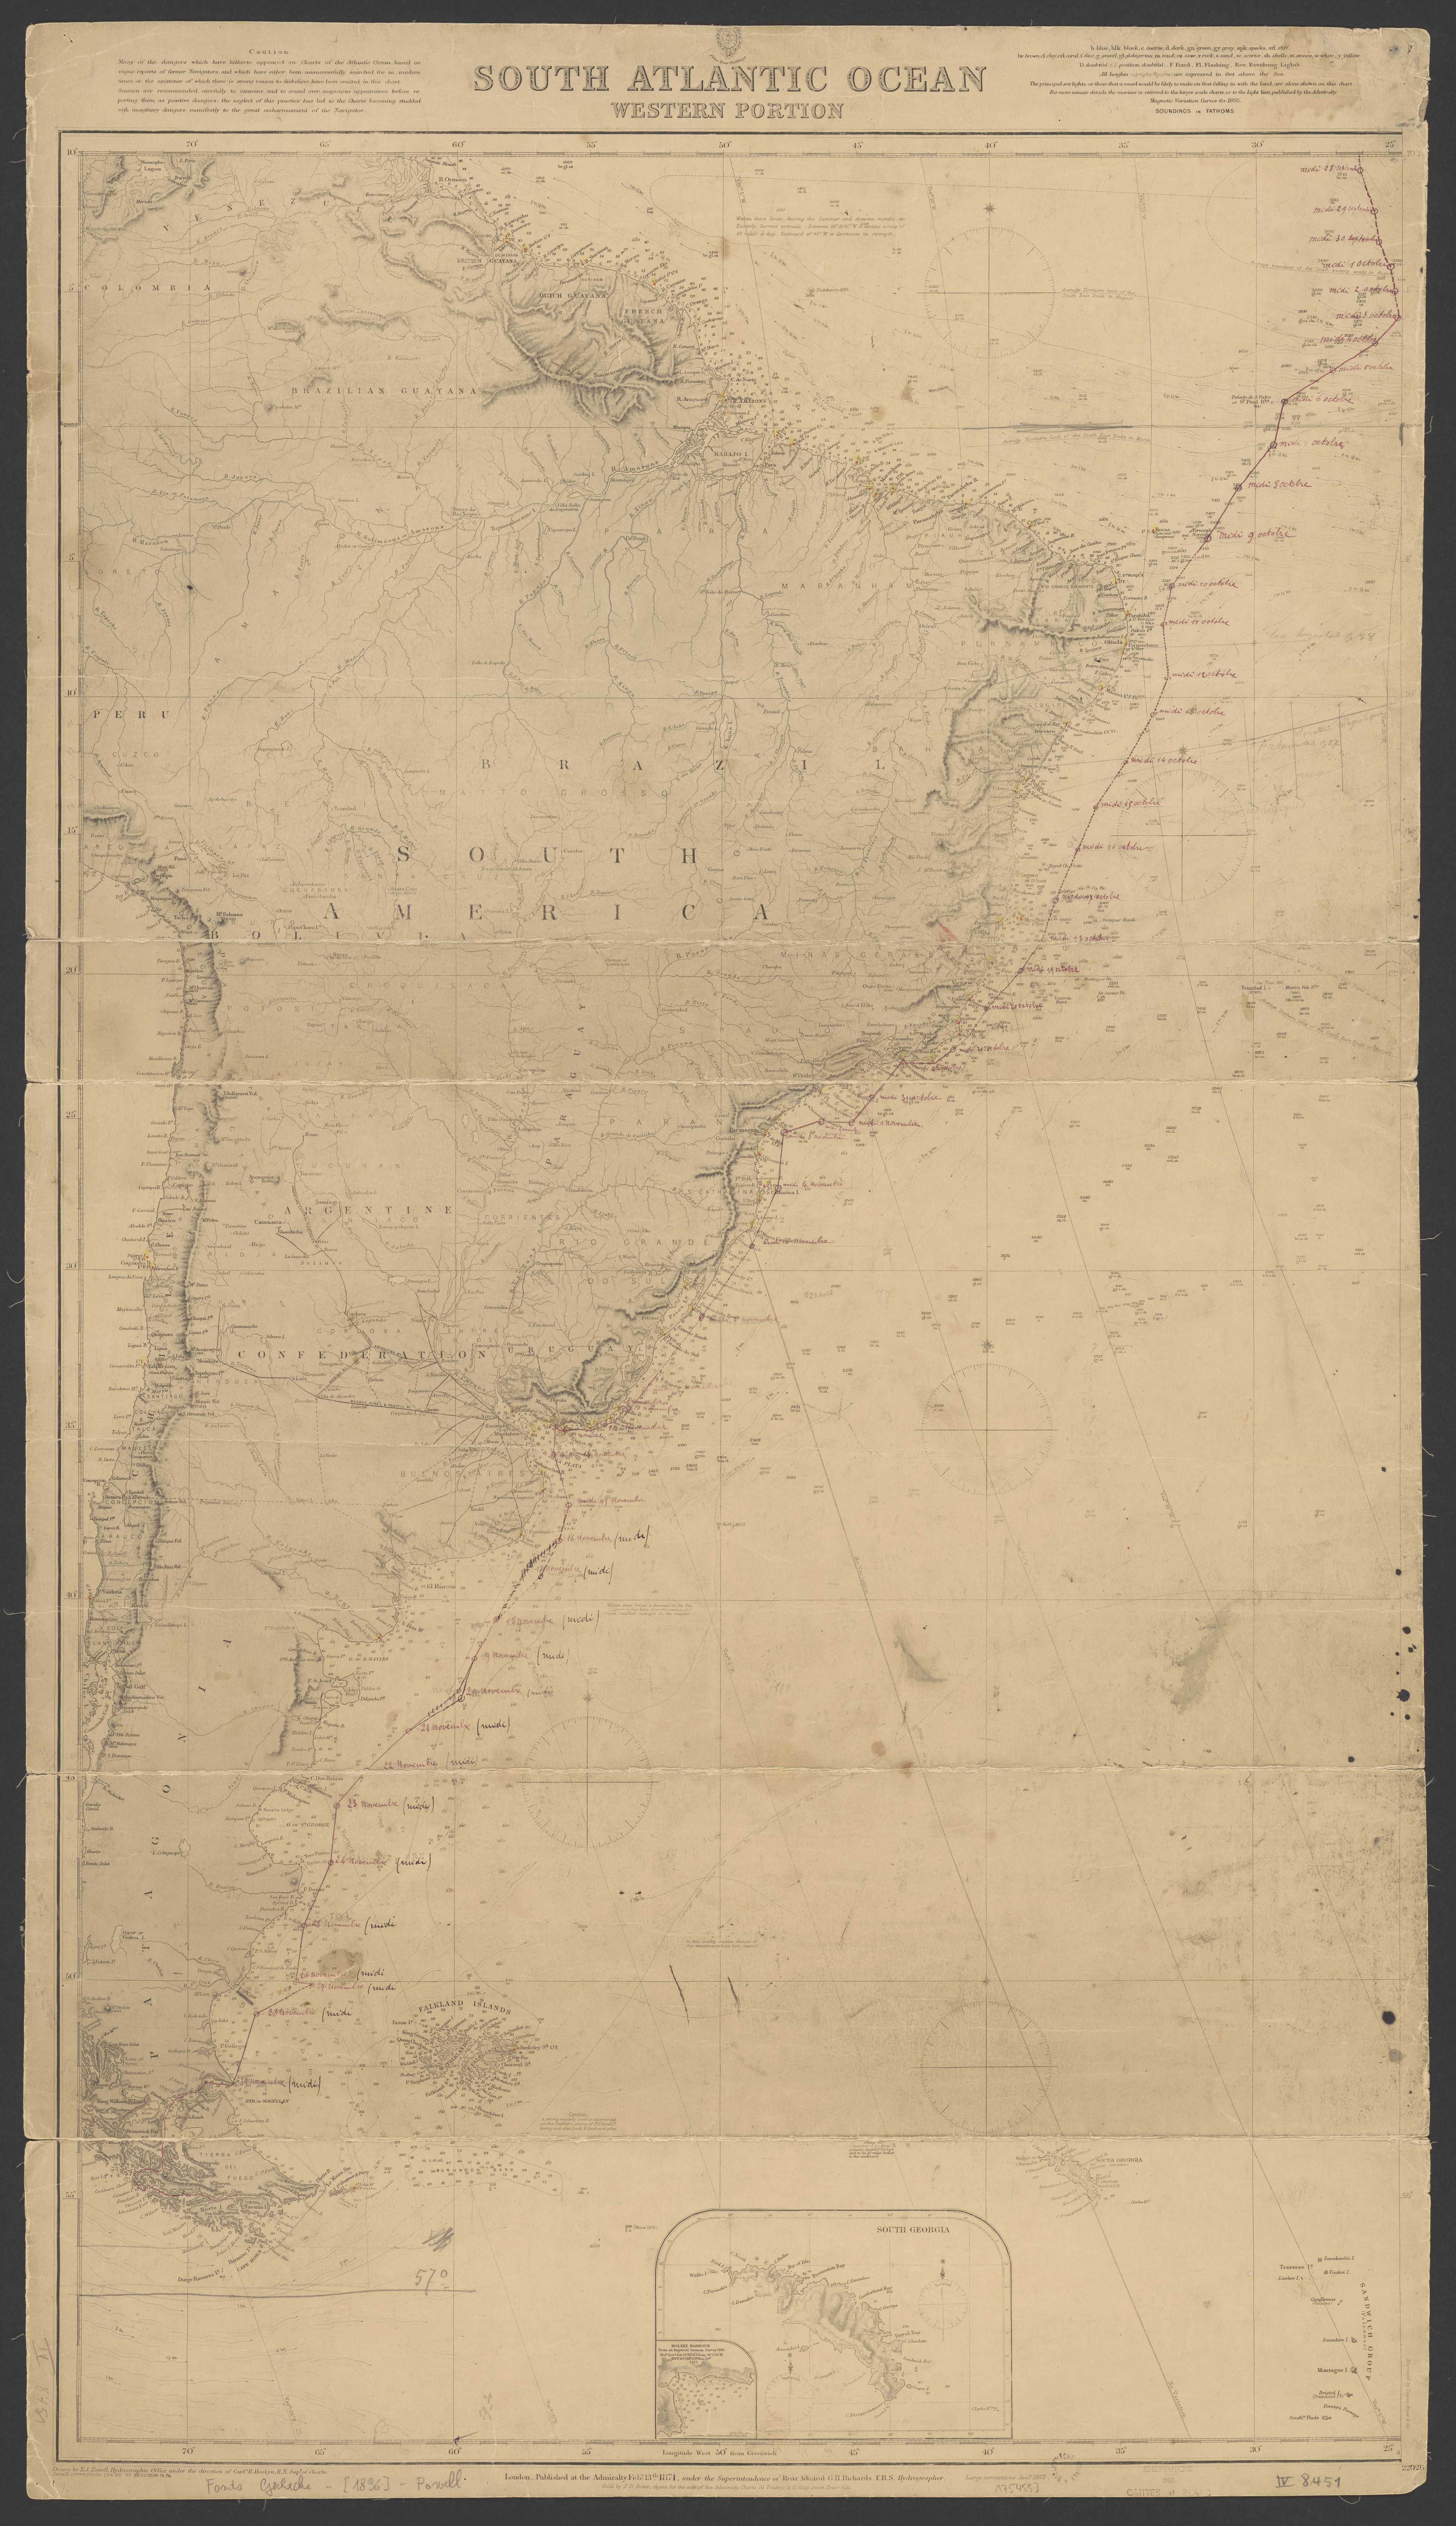 Admiraltykaart van de Zuid-Atlantische Oceaan uit 1871. De vaarroute van de Belgica werd door de Gerlache op de kaart uitgetekend.